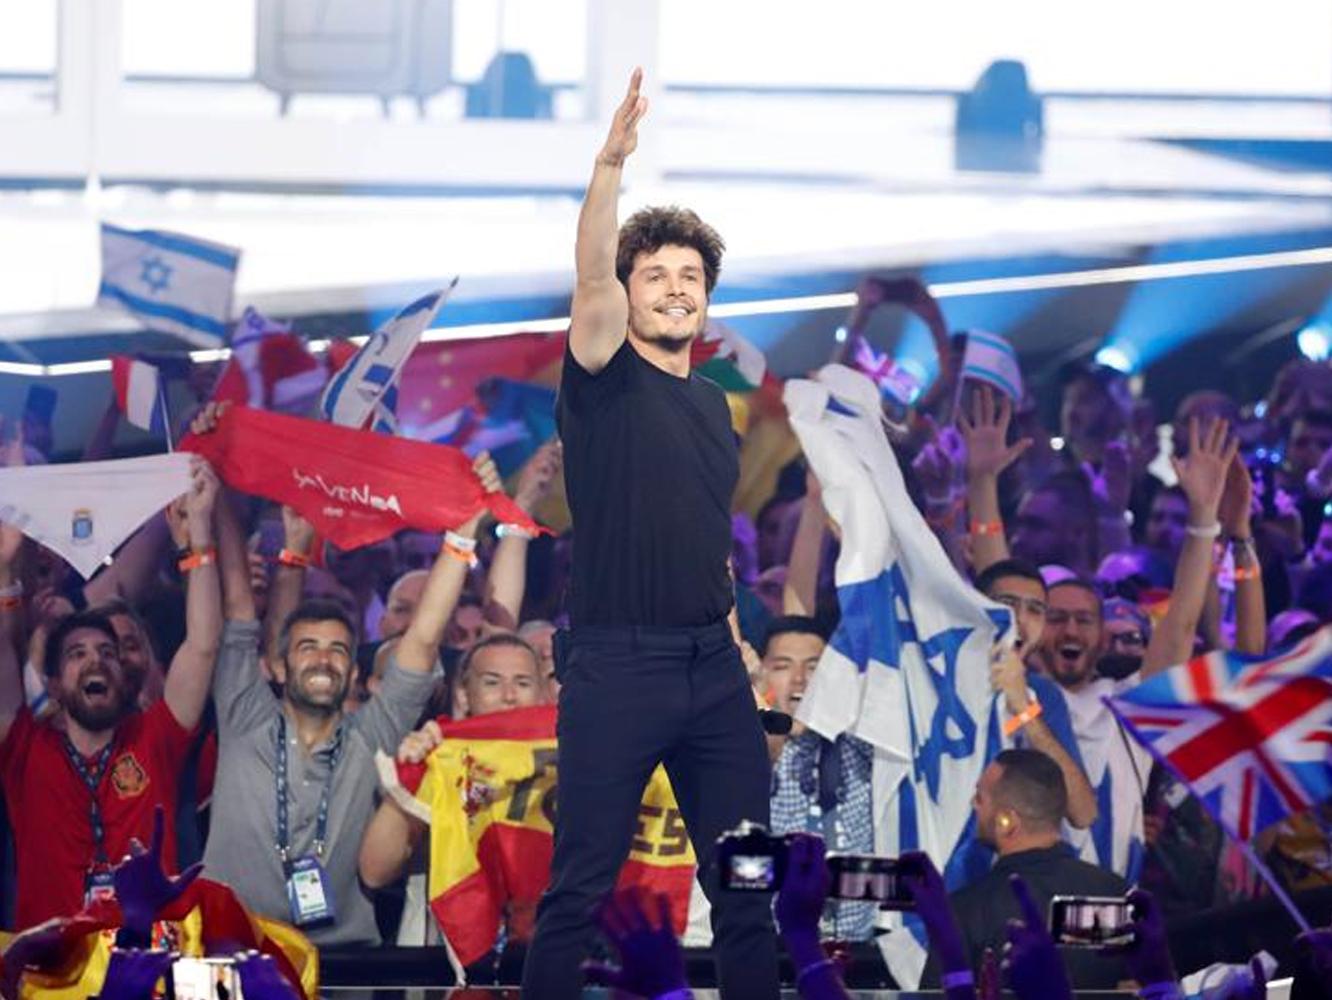 Eurovisión 2019: Países Bajos gana con Duncan Laurence, España queda en el puesto 22